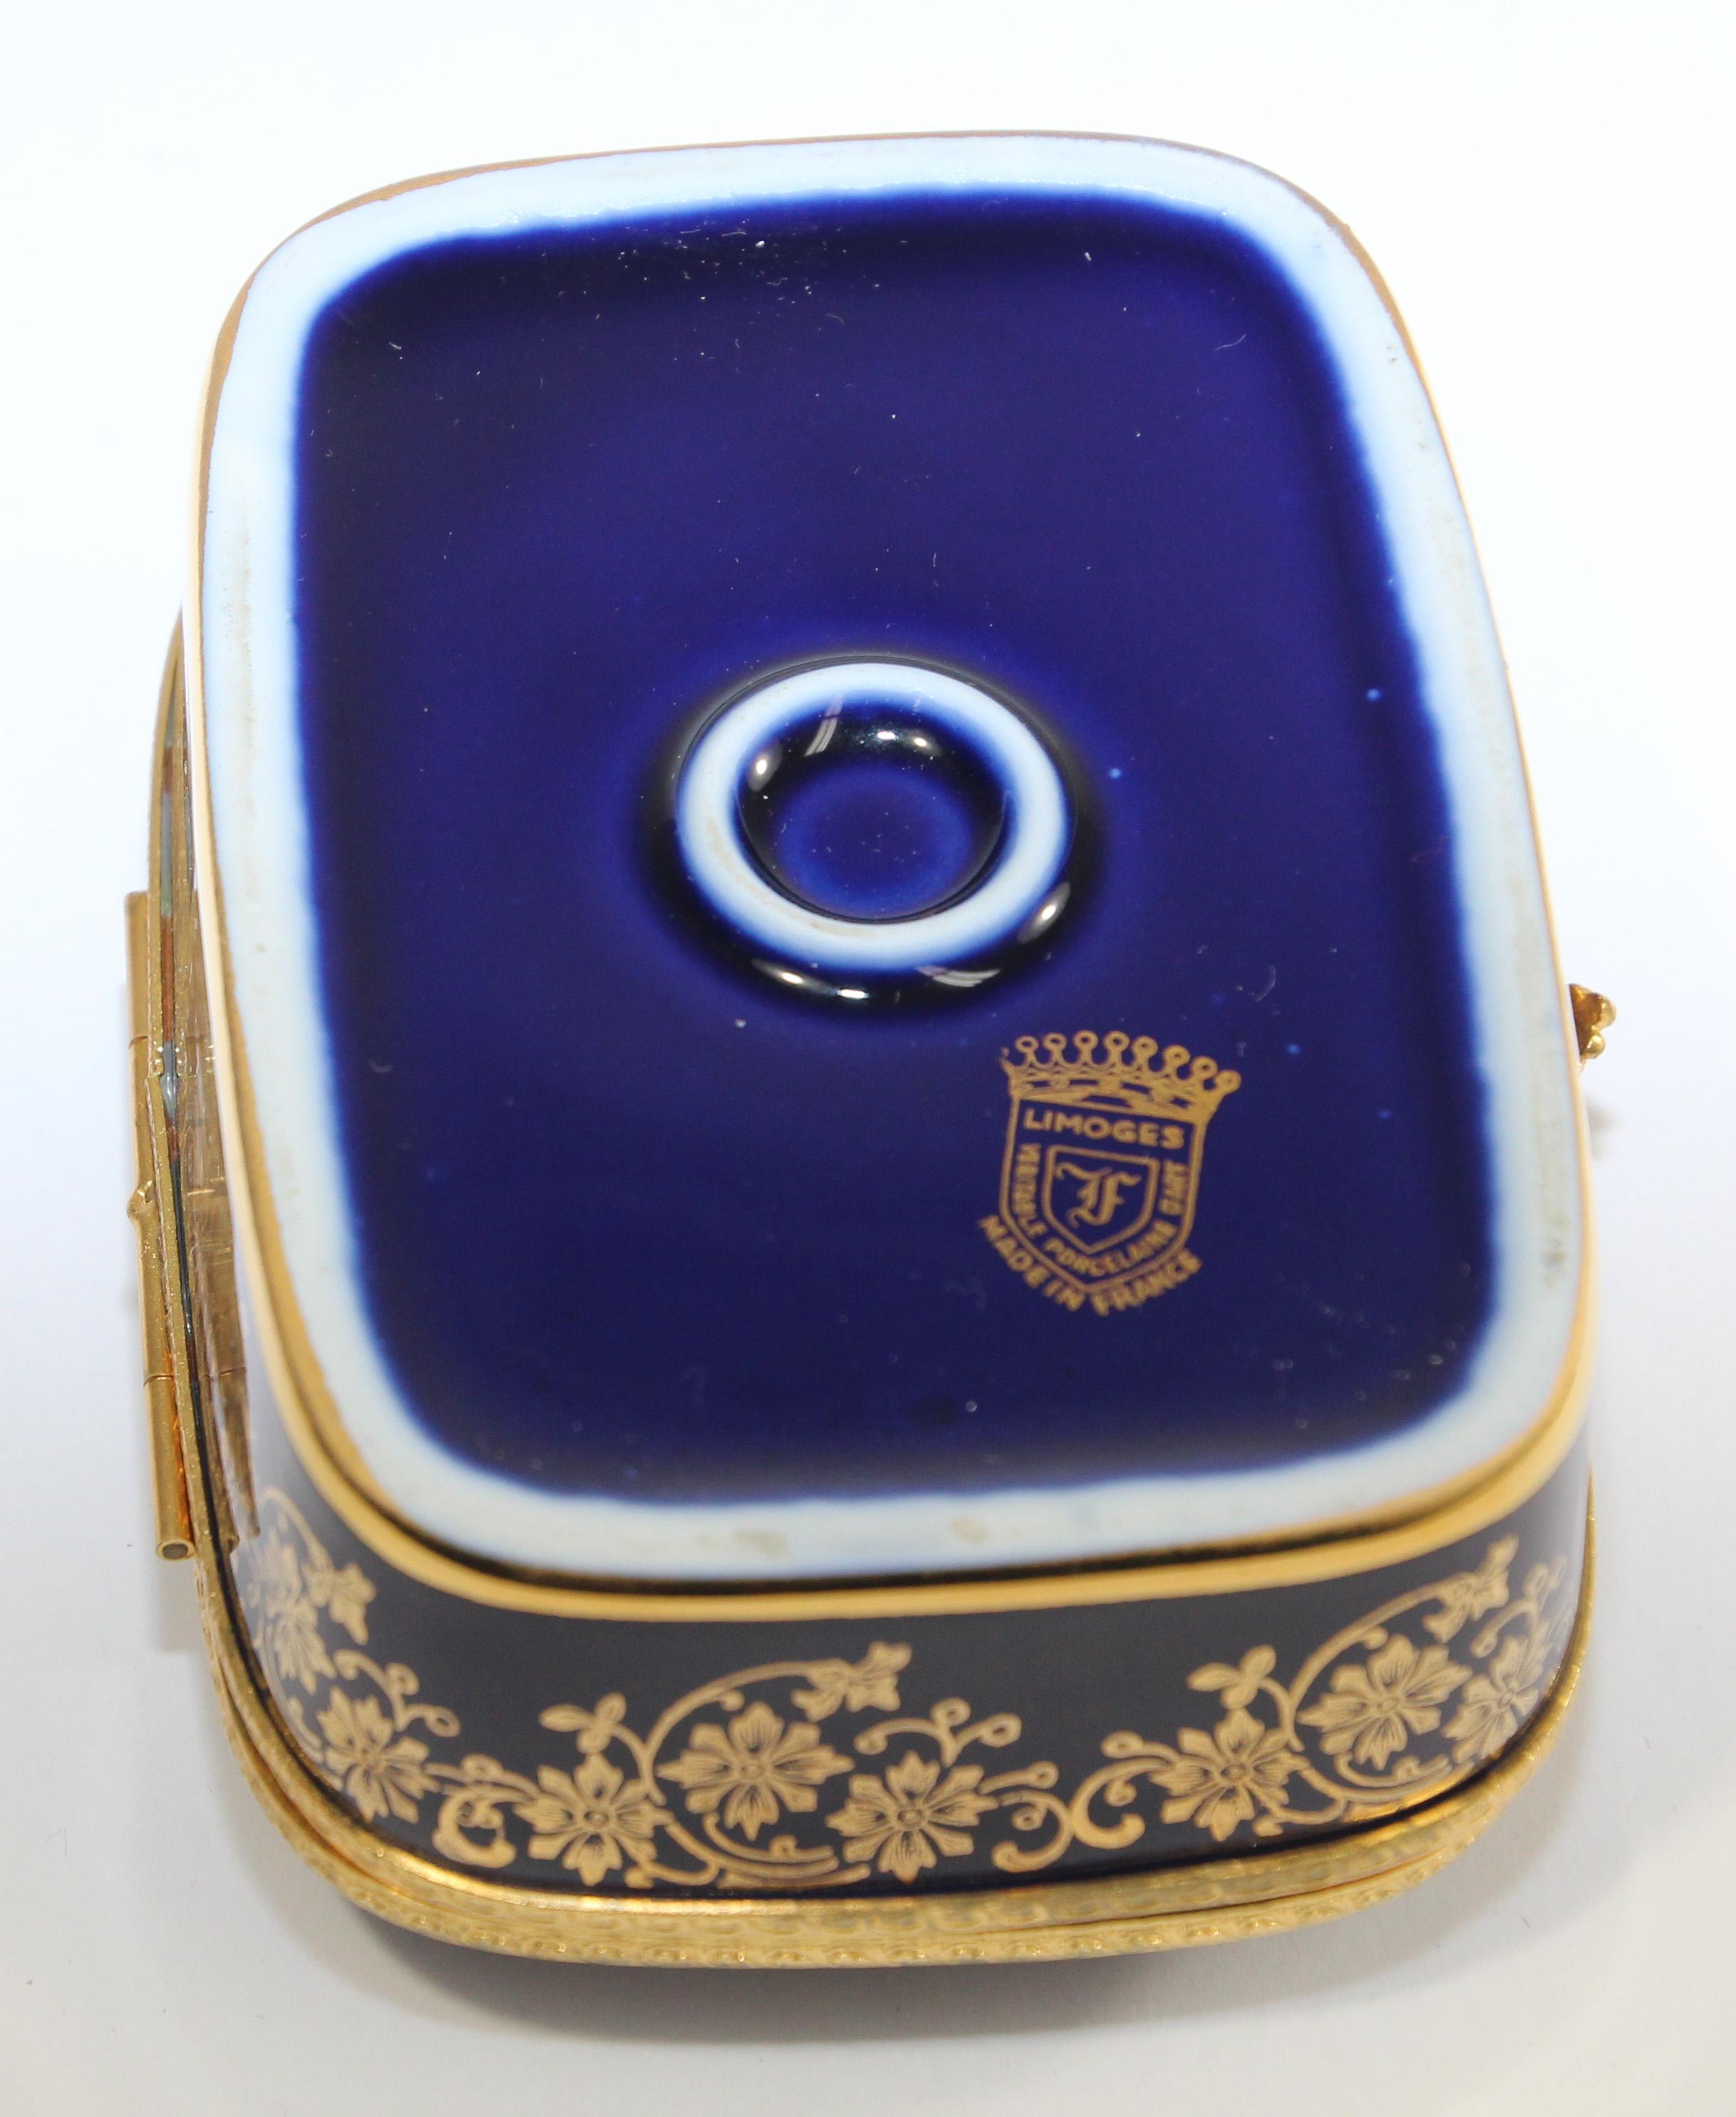 Vintage Limoges France 22-Karat Gold Trinket Box in Cobalt Royal Blue 1